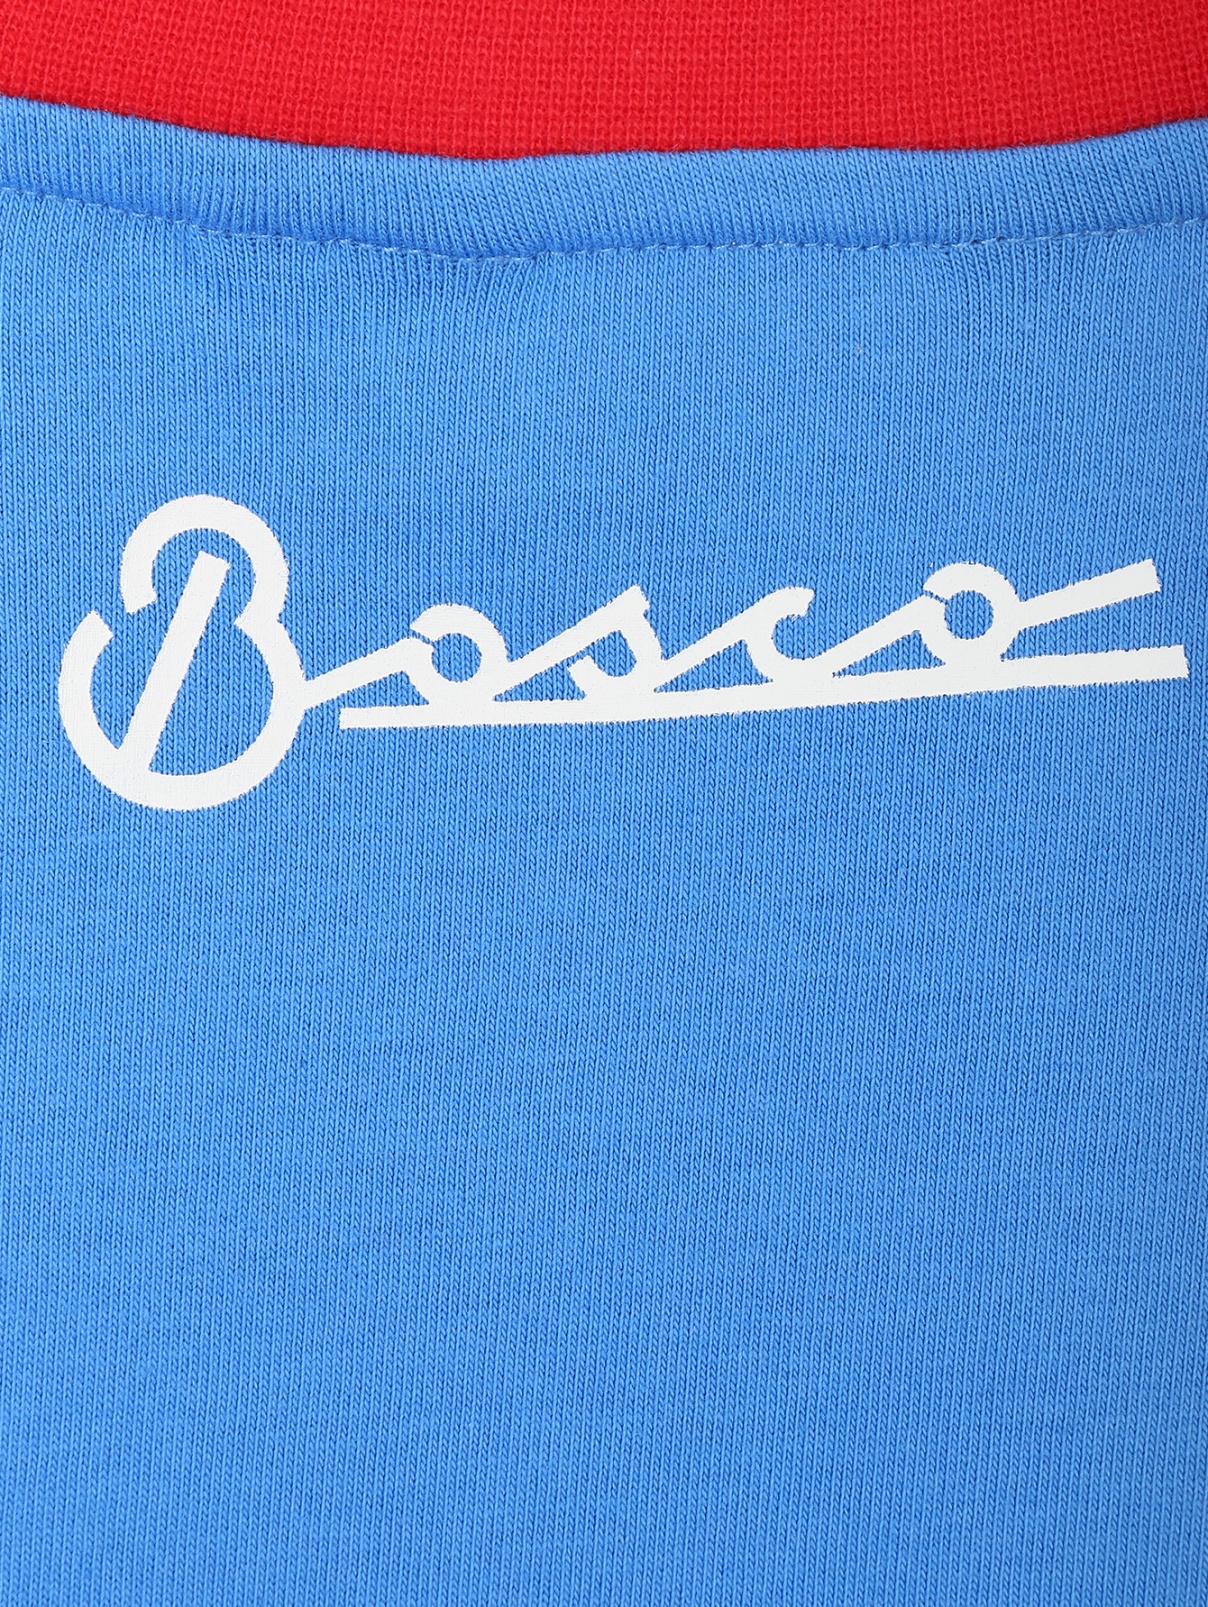 Логотип одежды. Футболка Боско спорт. Нашивка Боско. Рельефный логотип на одежду.